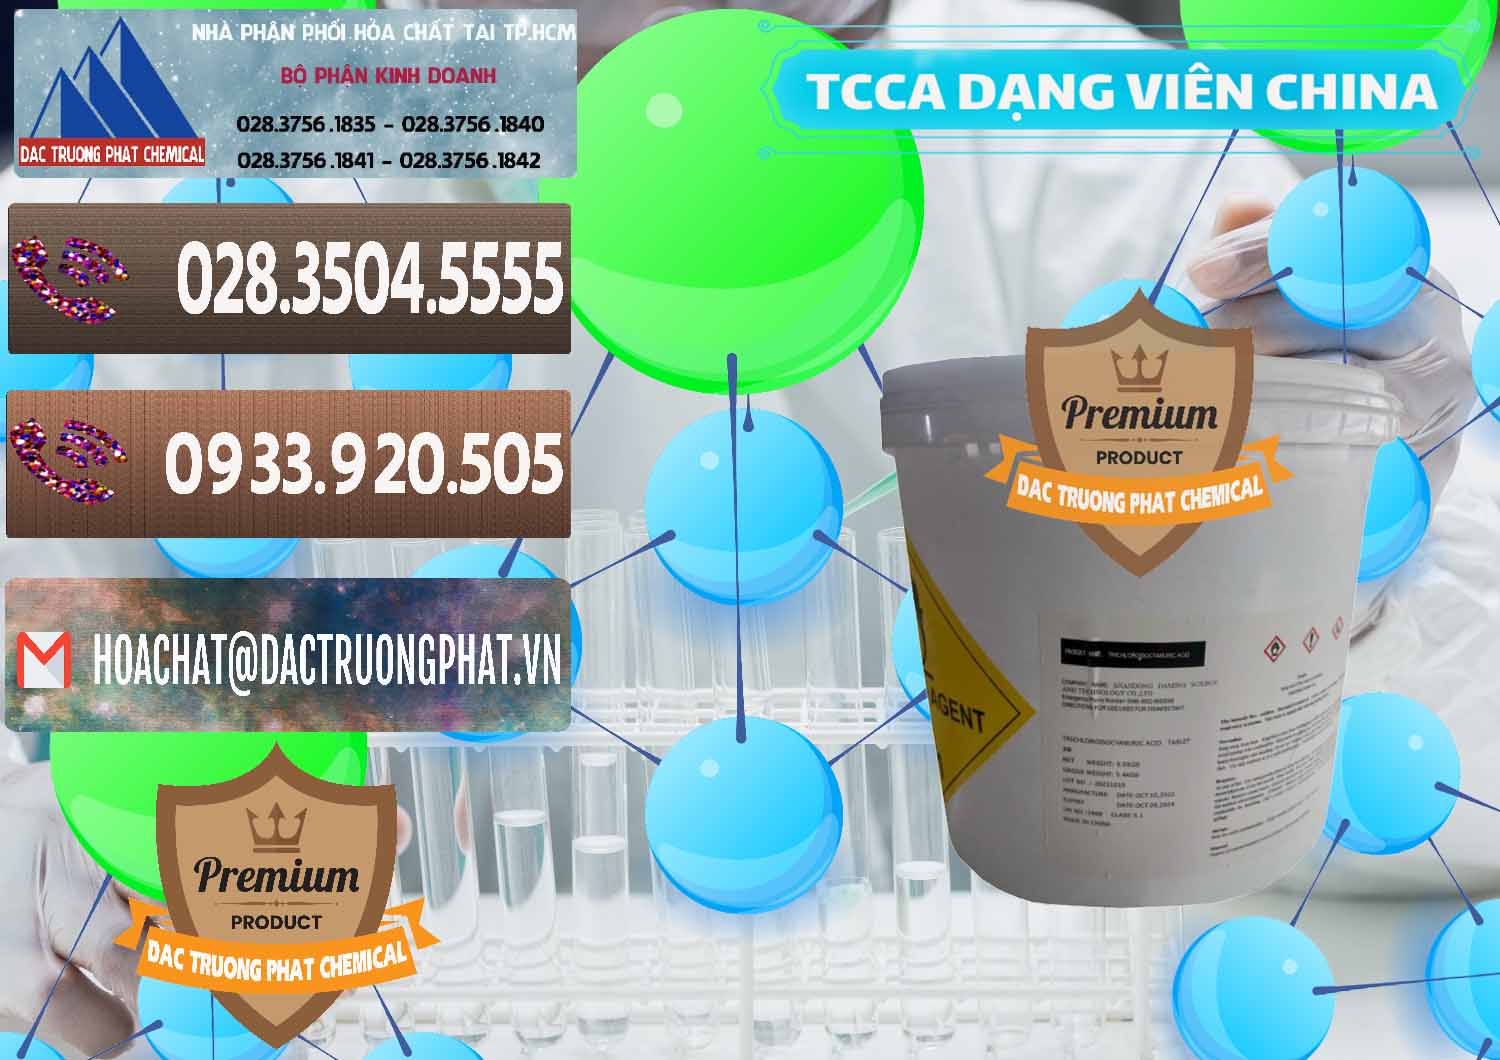 Bán _ phân phối TCCA - Acid Trichloroisocyanuric Dạng Viên Thùng 5kg Trung Quốc China - 0379 - Công ty chuyên cung cấp ( nhập khẩu ) hóa chất tại TP.HCM - hoachatviet.net